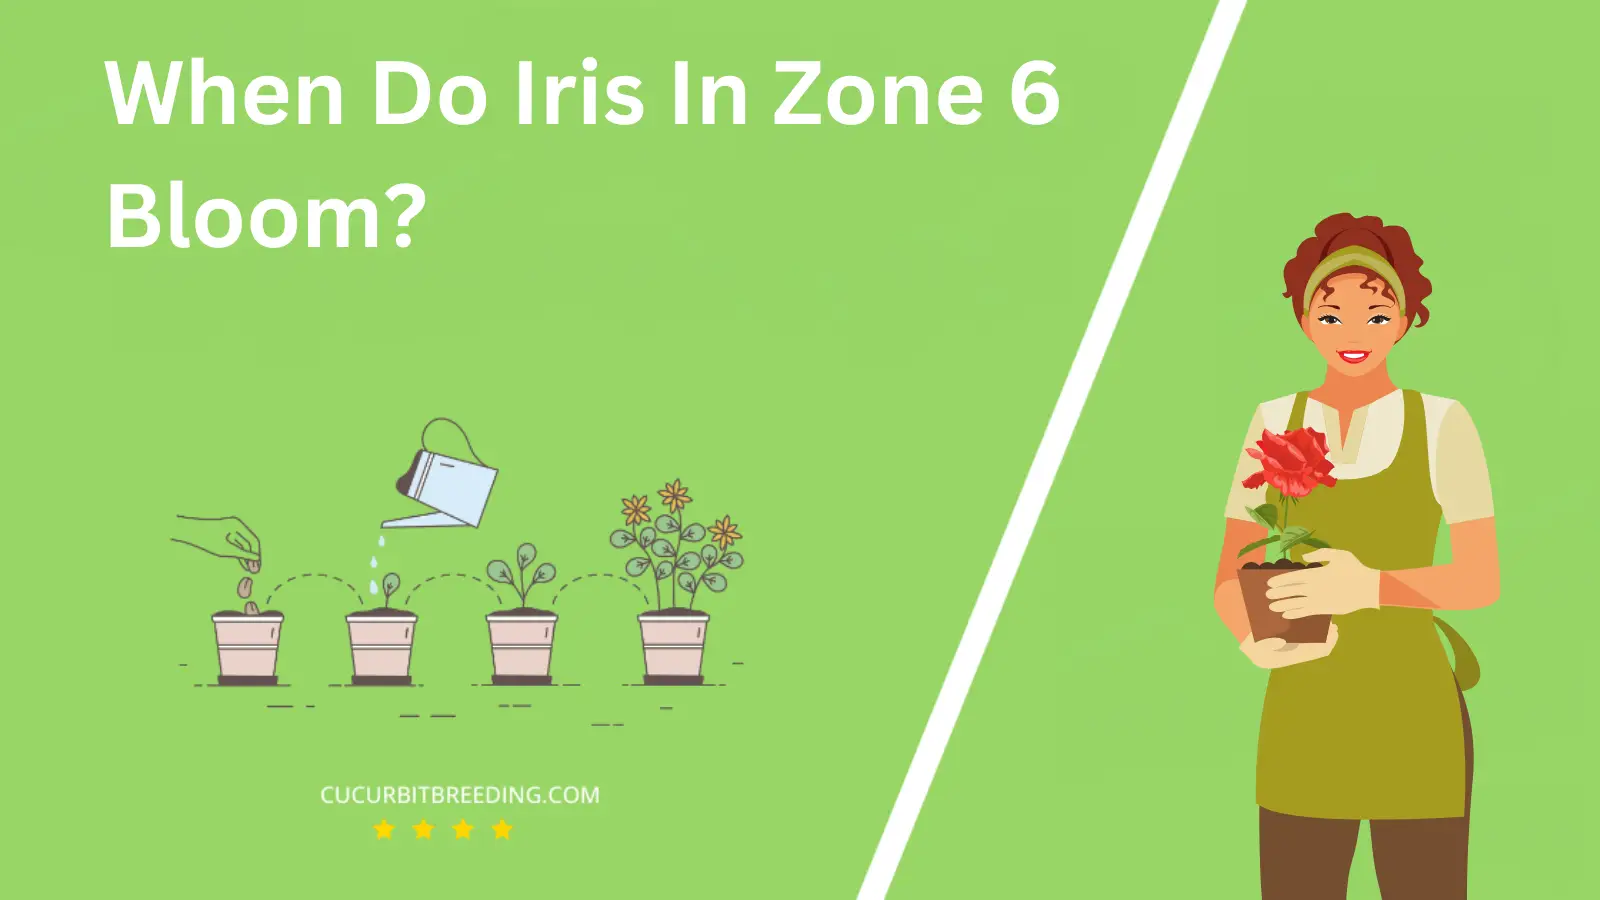 When Do Iris In Zone 6 Bloom?